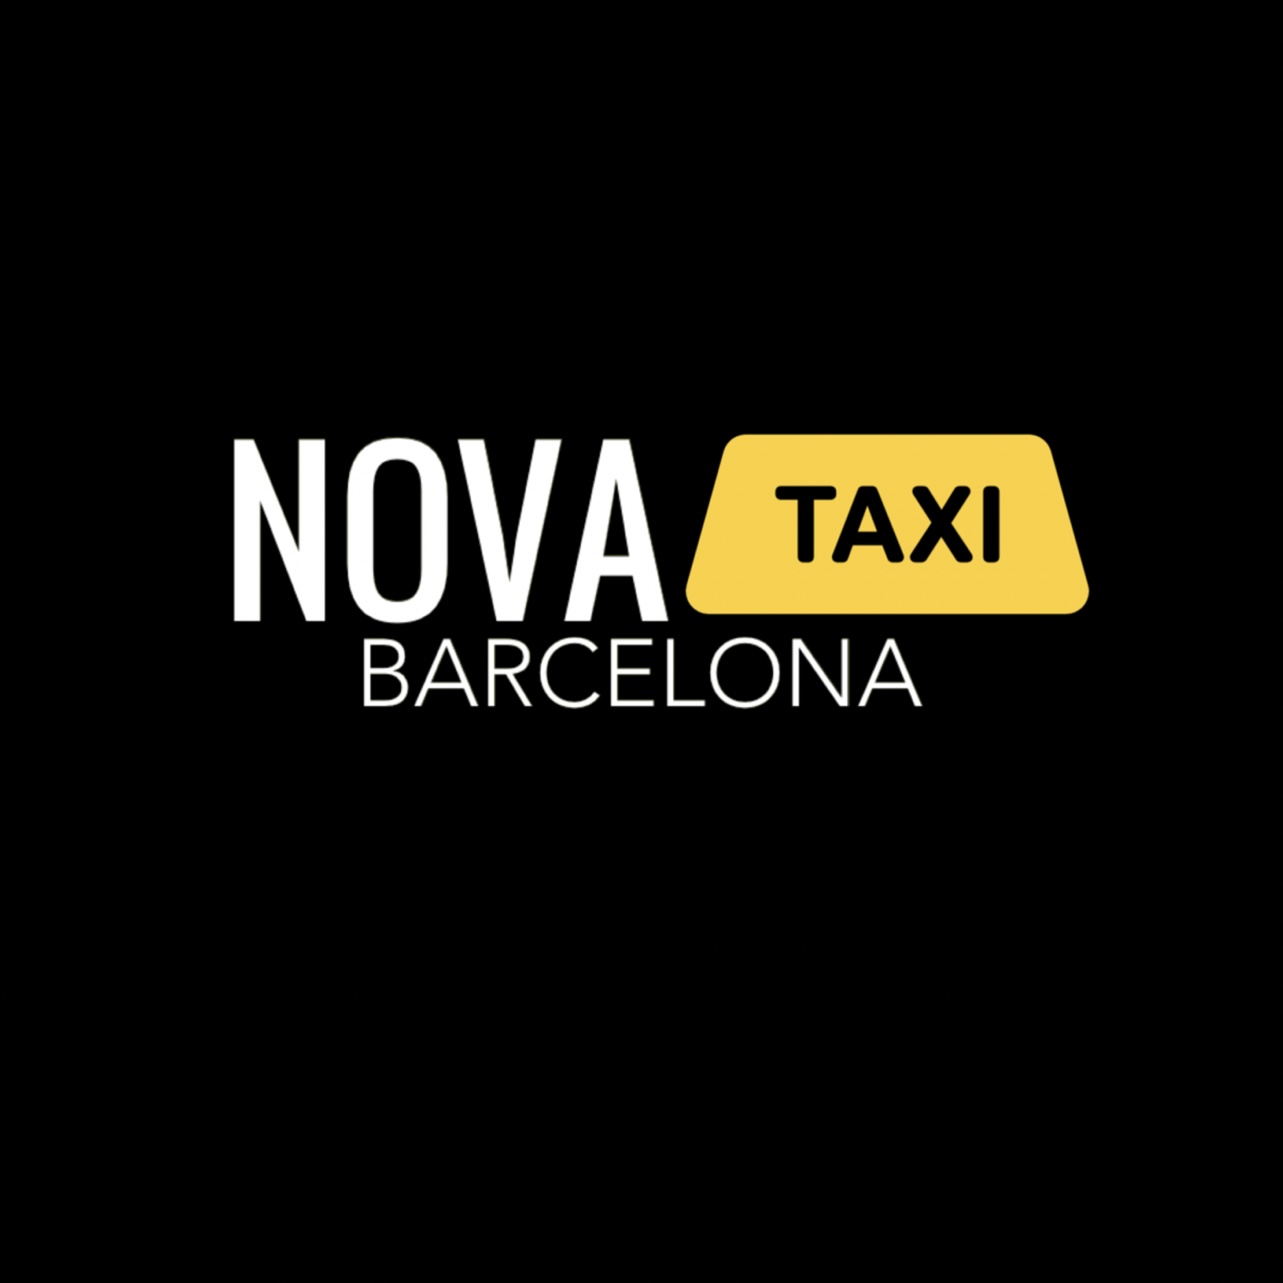 Taxi 24 Horas Barcelona (Nova Taxi Barcelona)